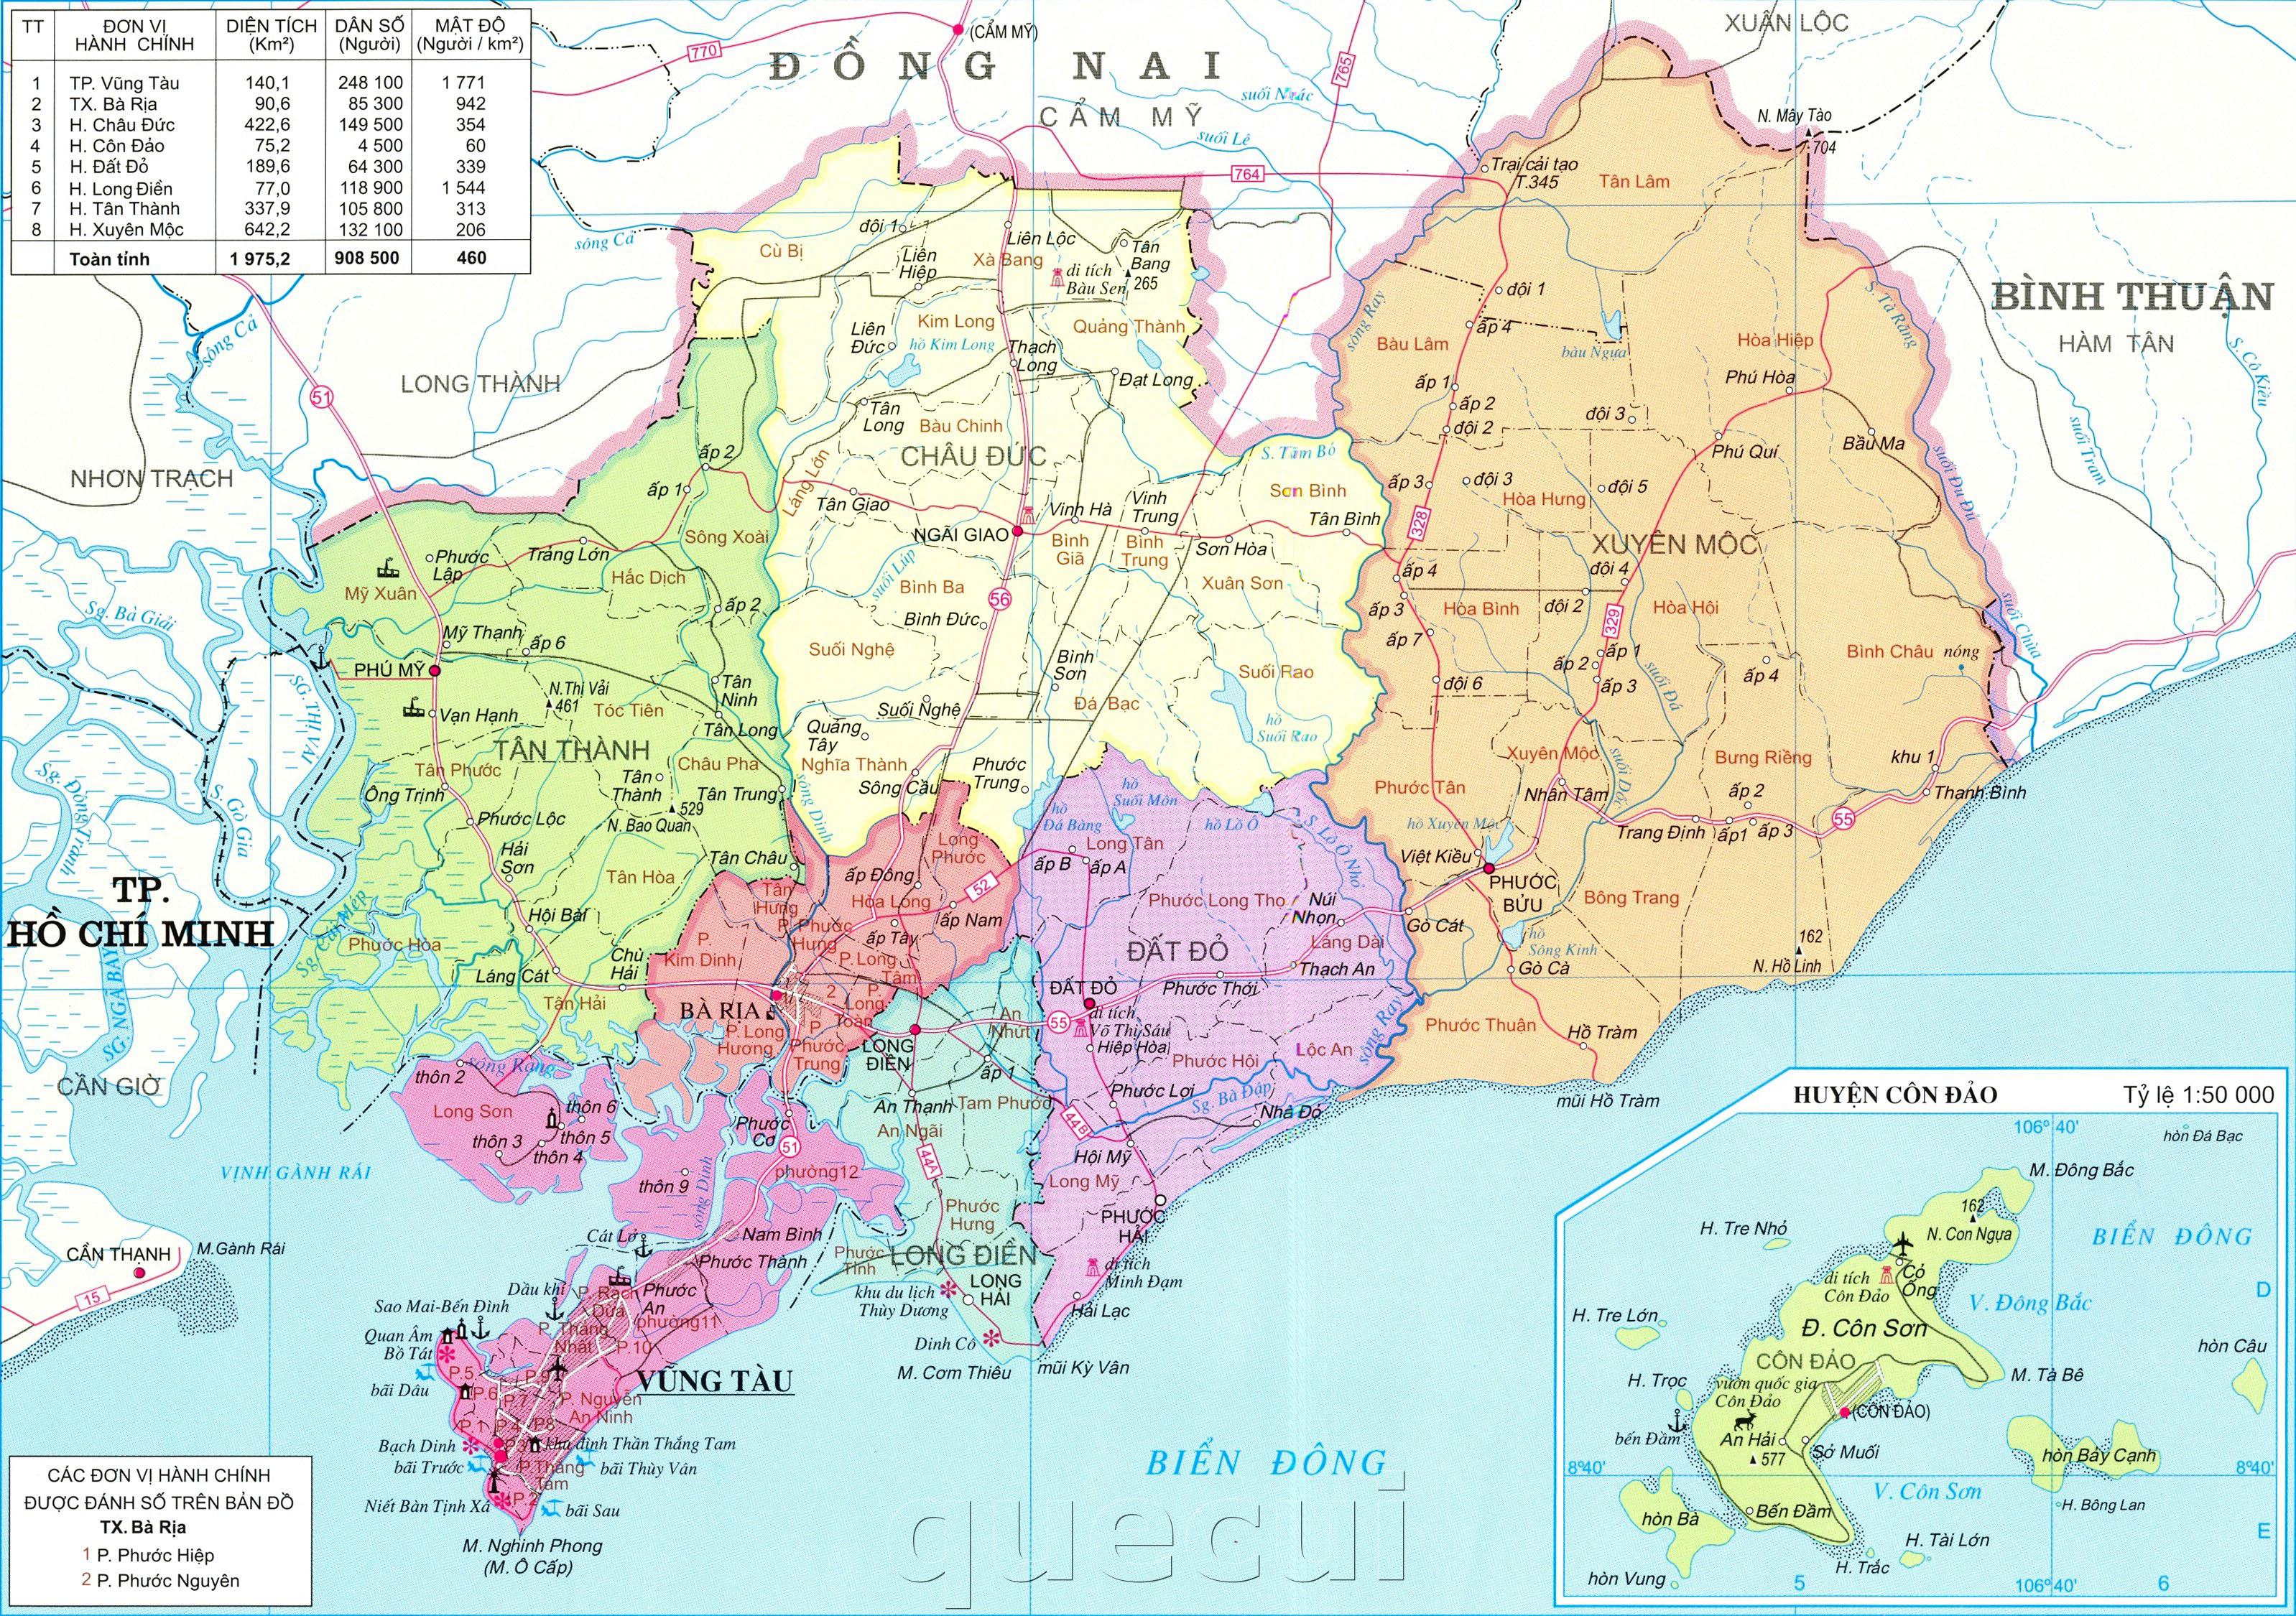 Bản đồ hành chính tỉnh Bà Rịa - Vũng Tàu